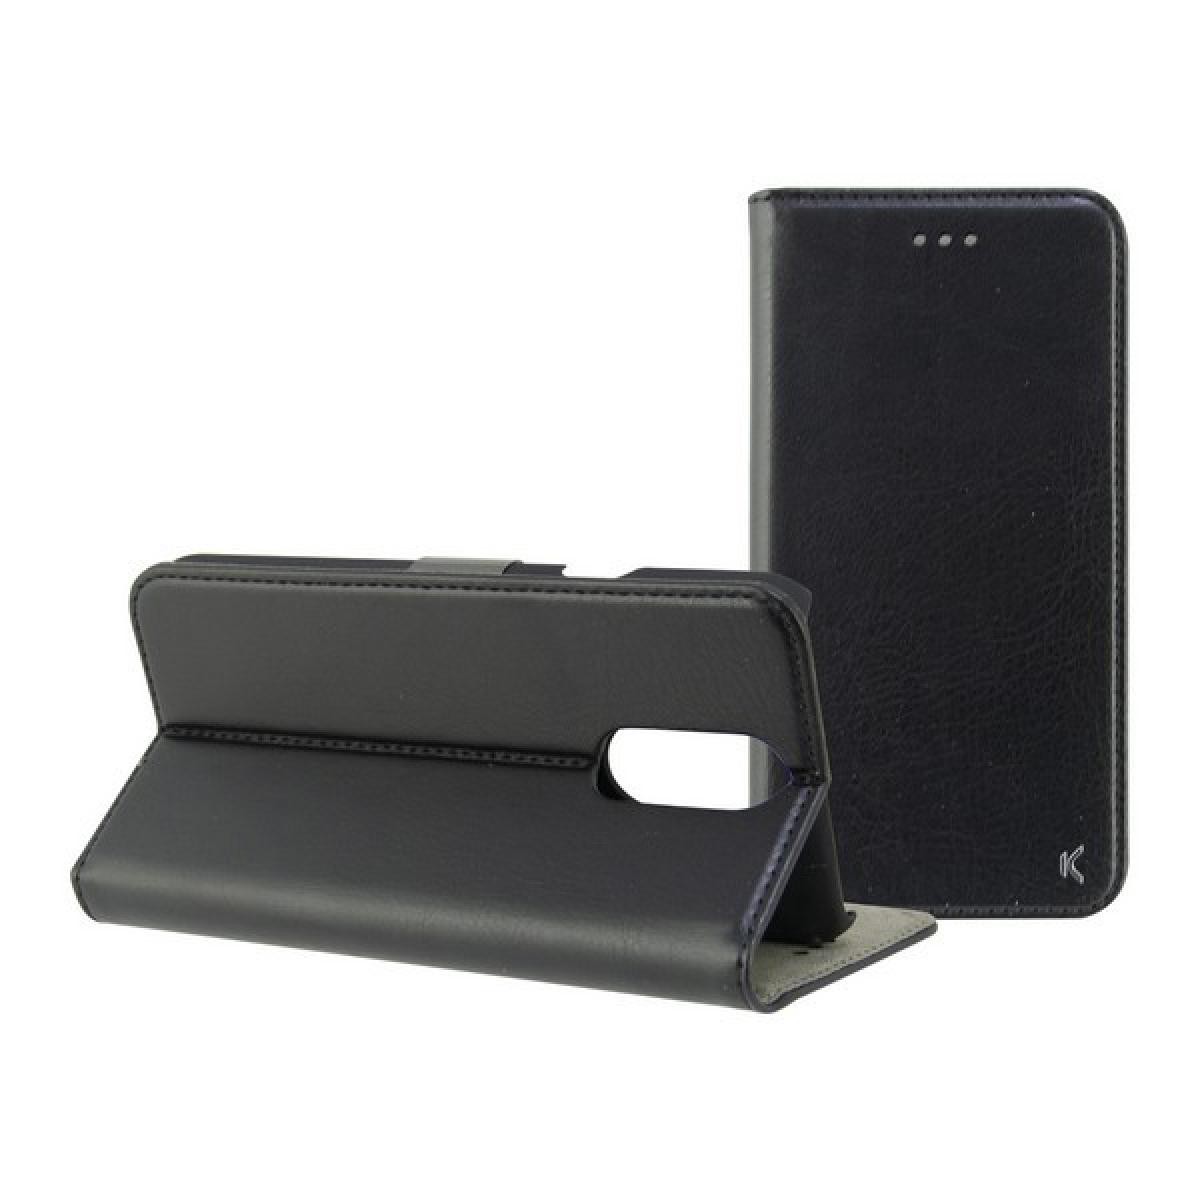 Totalcadeau - Housse de protection Folio compatible Lg Q7 Noir Pas cher - Coque, étui smartphone